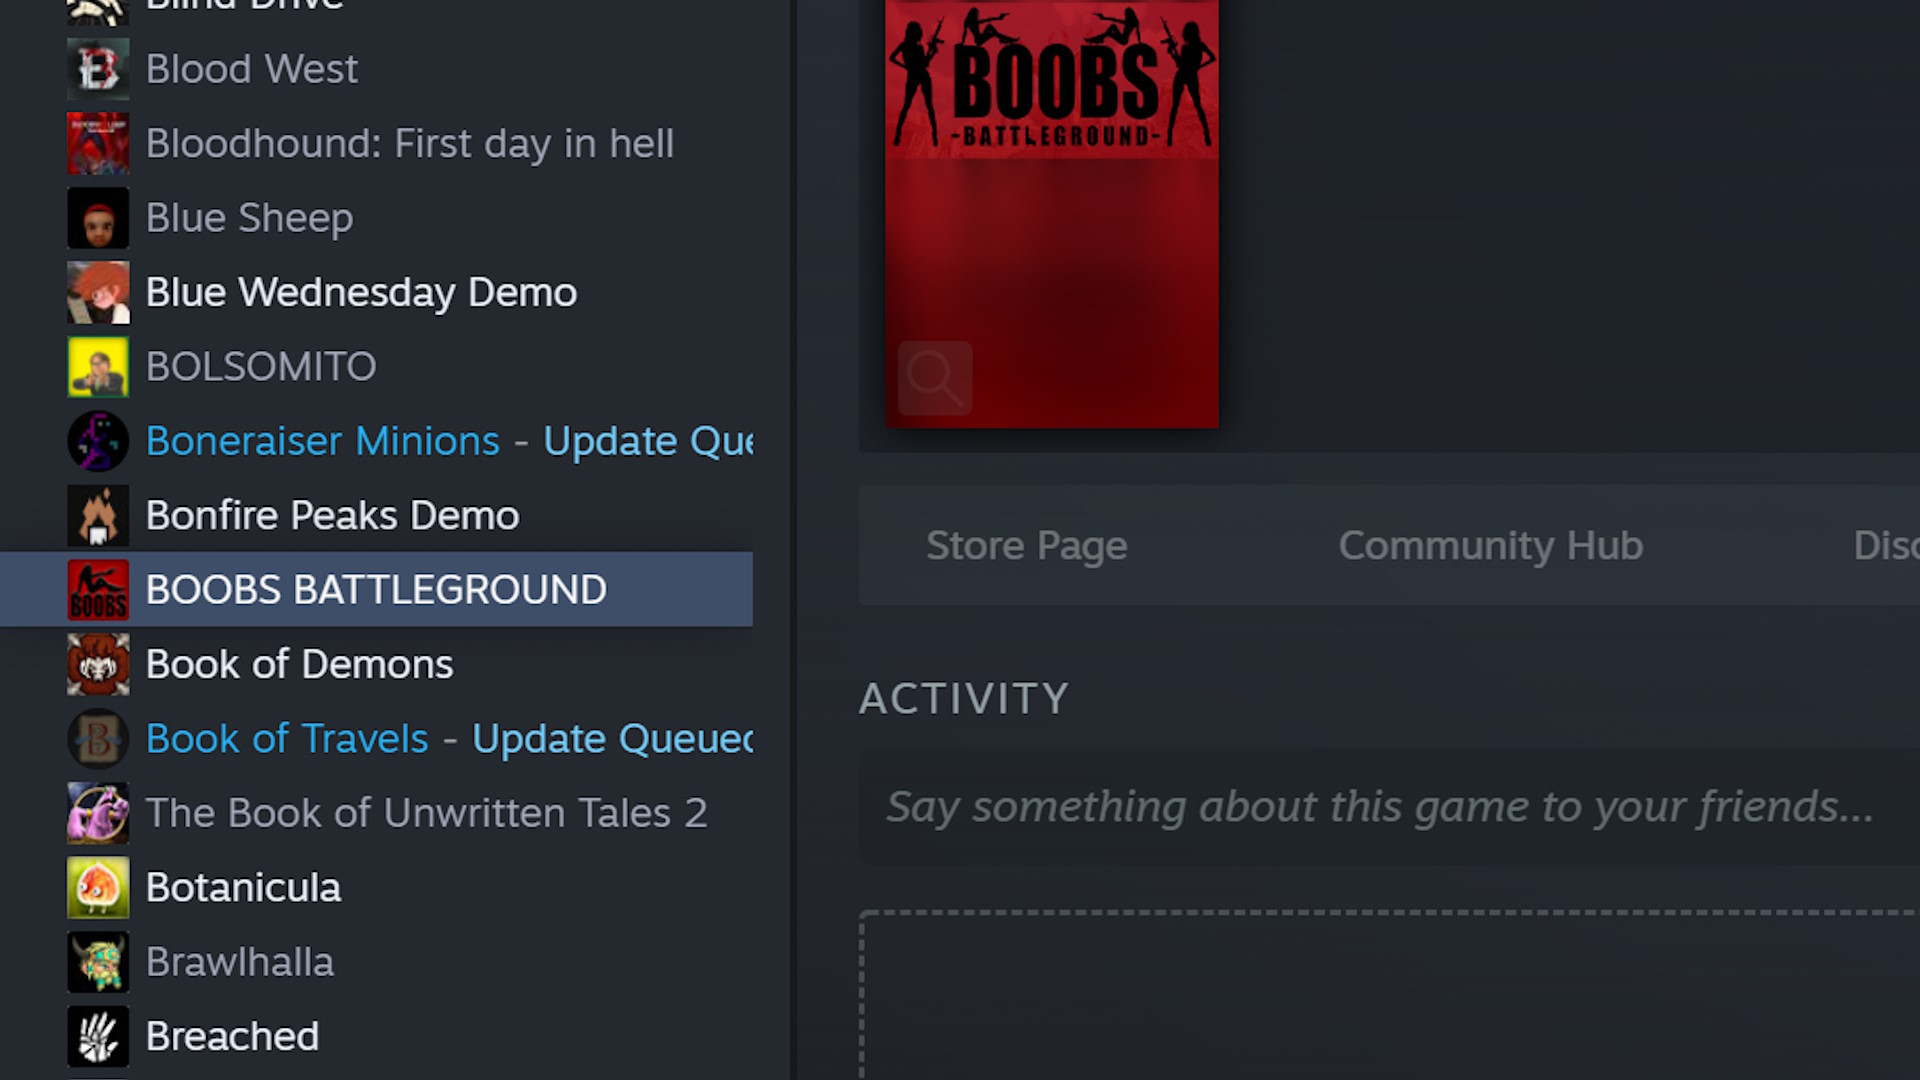 Yes, I own Boobs Battleground on Steam. It was for work.